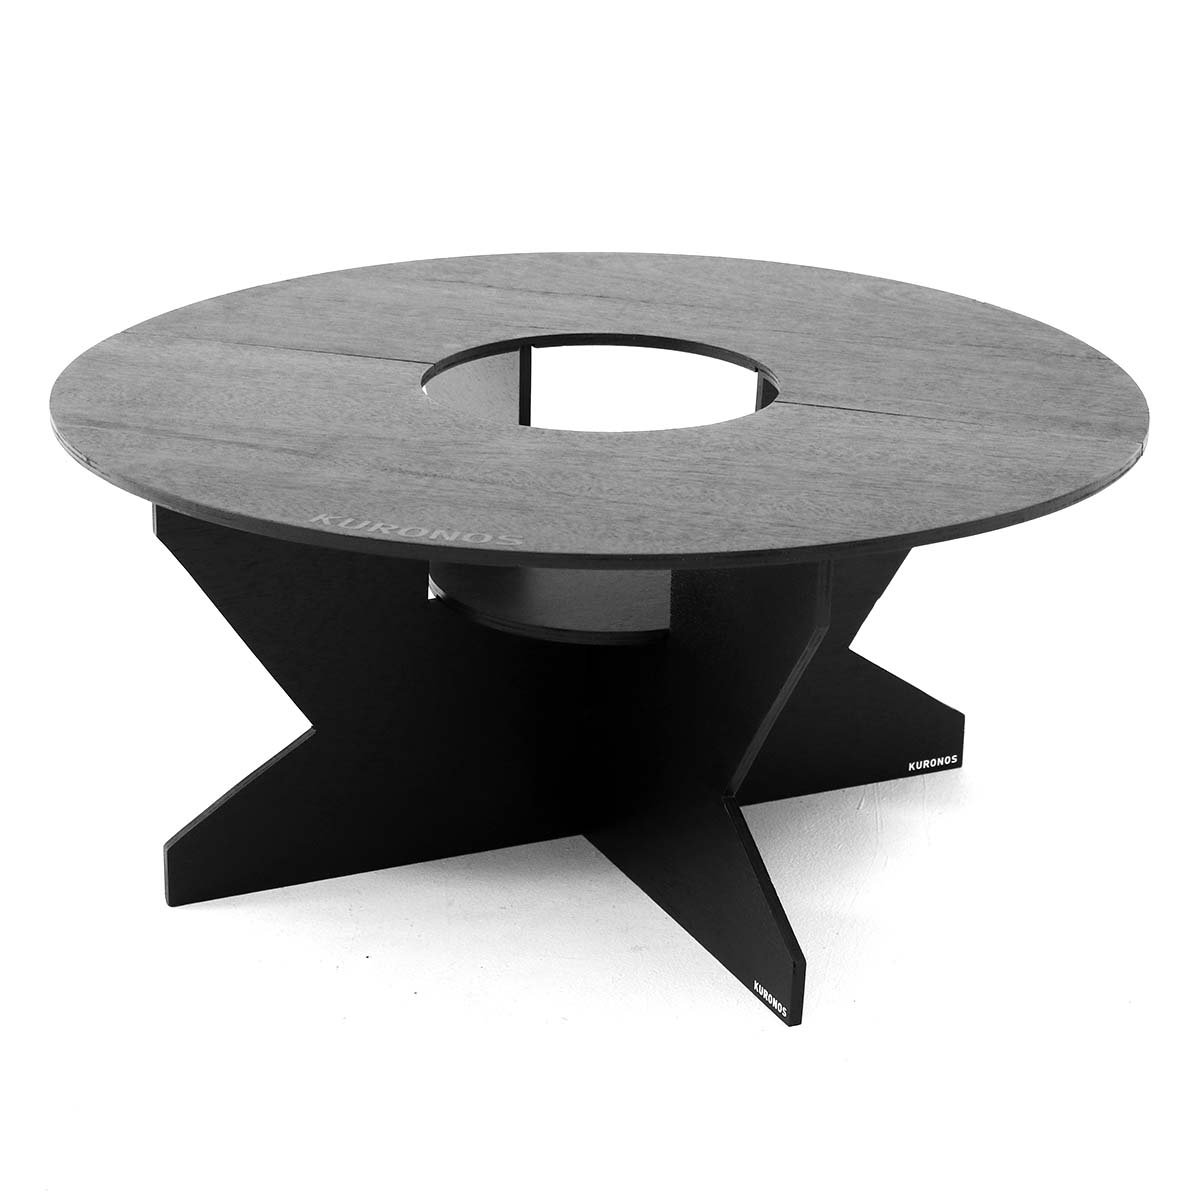 KURONOS クロノス テーブル 黒円卓テーブル 七輪専用 折りたたみ式